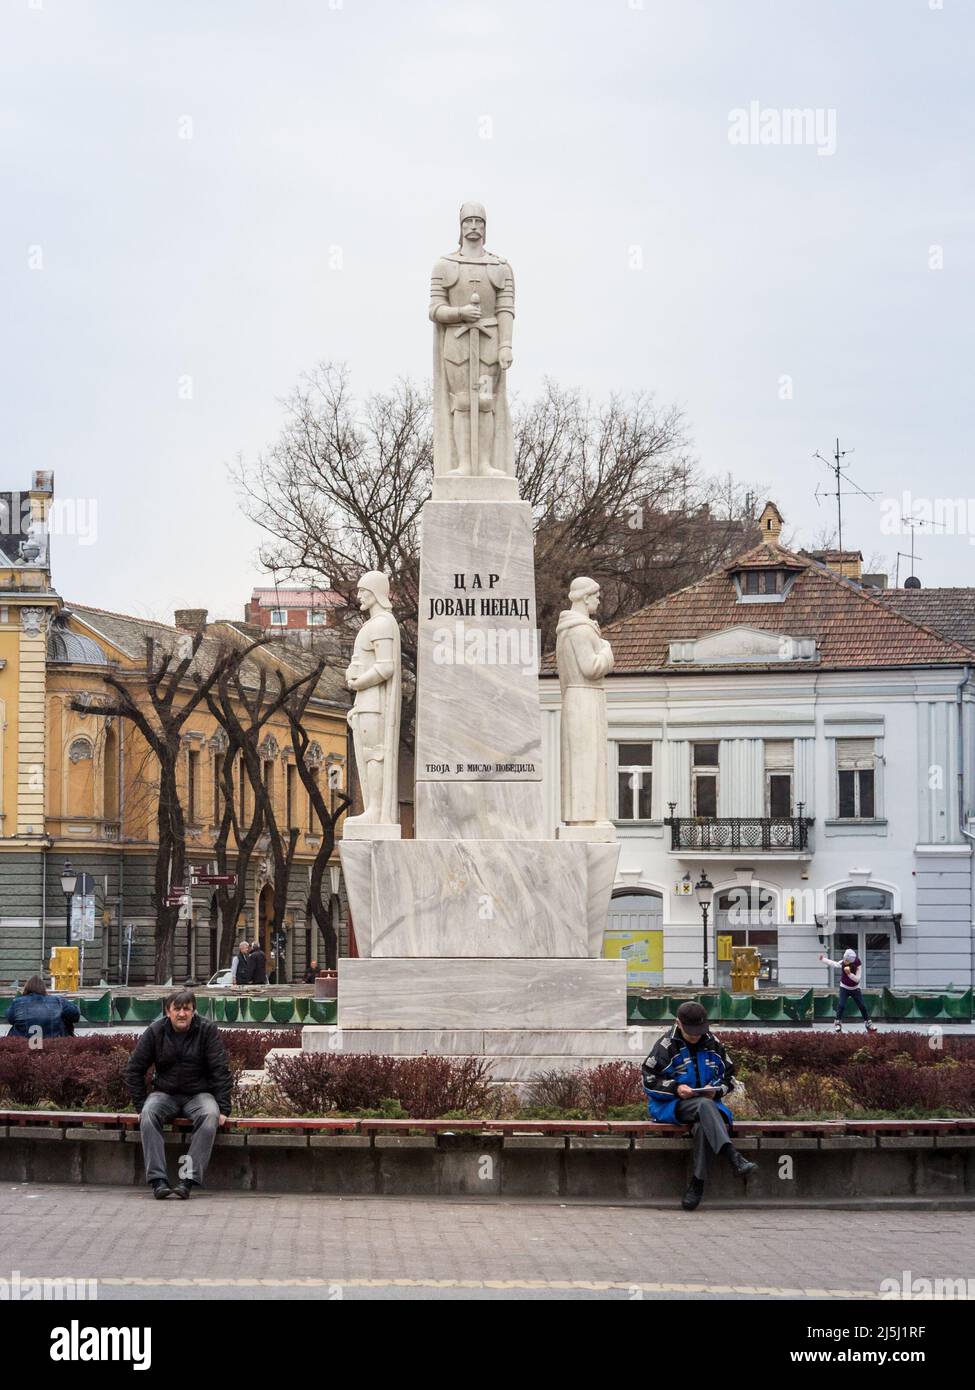 Foto della statua dedicata a Car Jovan nenad in Subotica, Serbia. Jovan Nenad noto come il Nero era un comandante militare serbo al servizio di Foto Stock